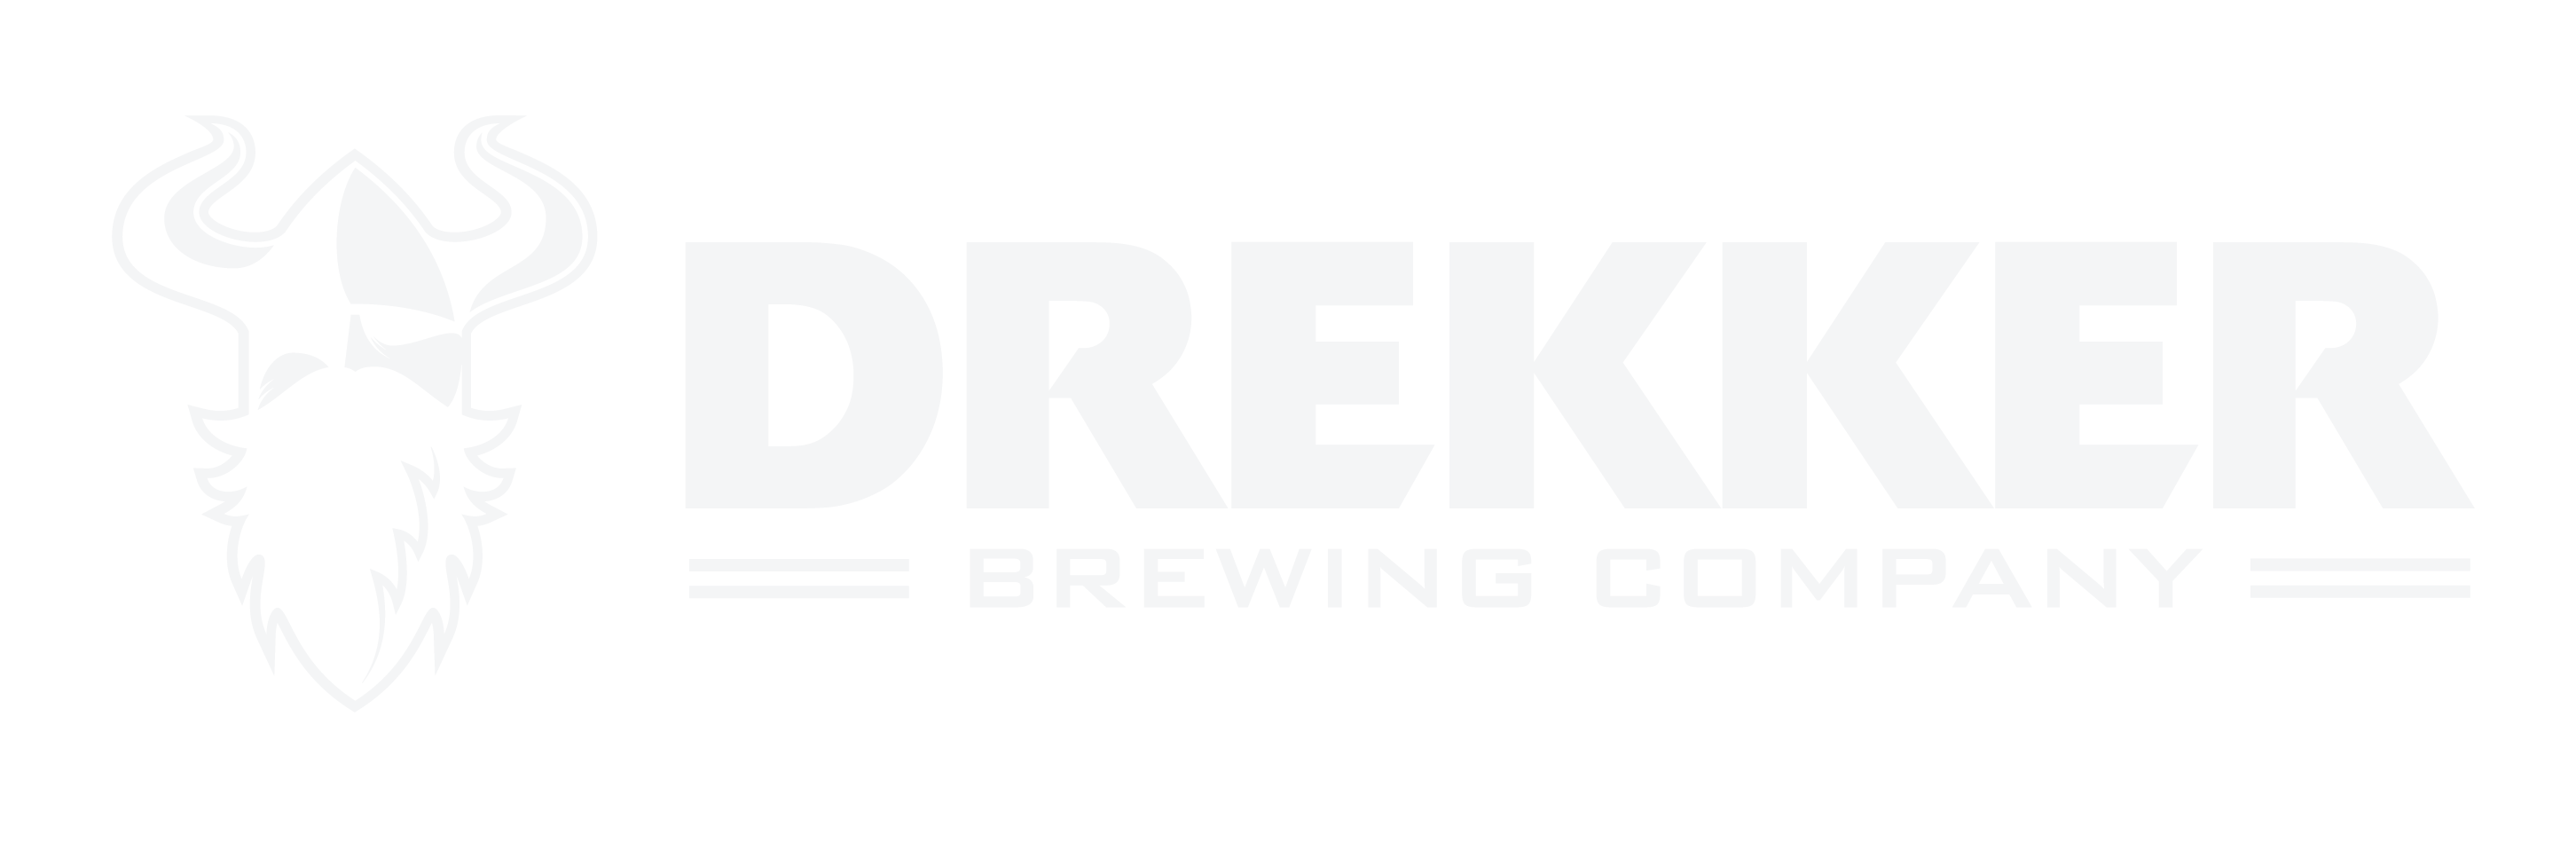 Drekker Brewing Co.